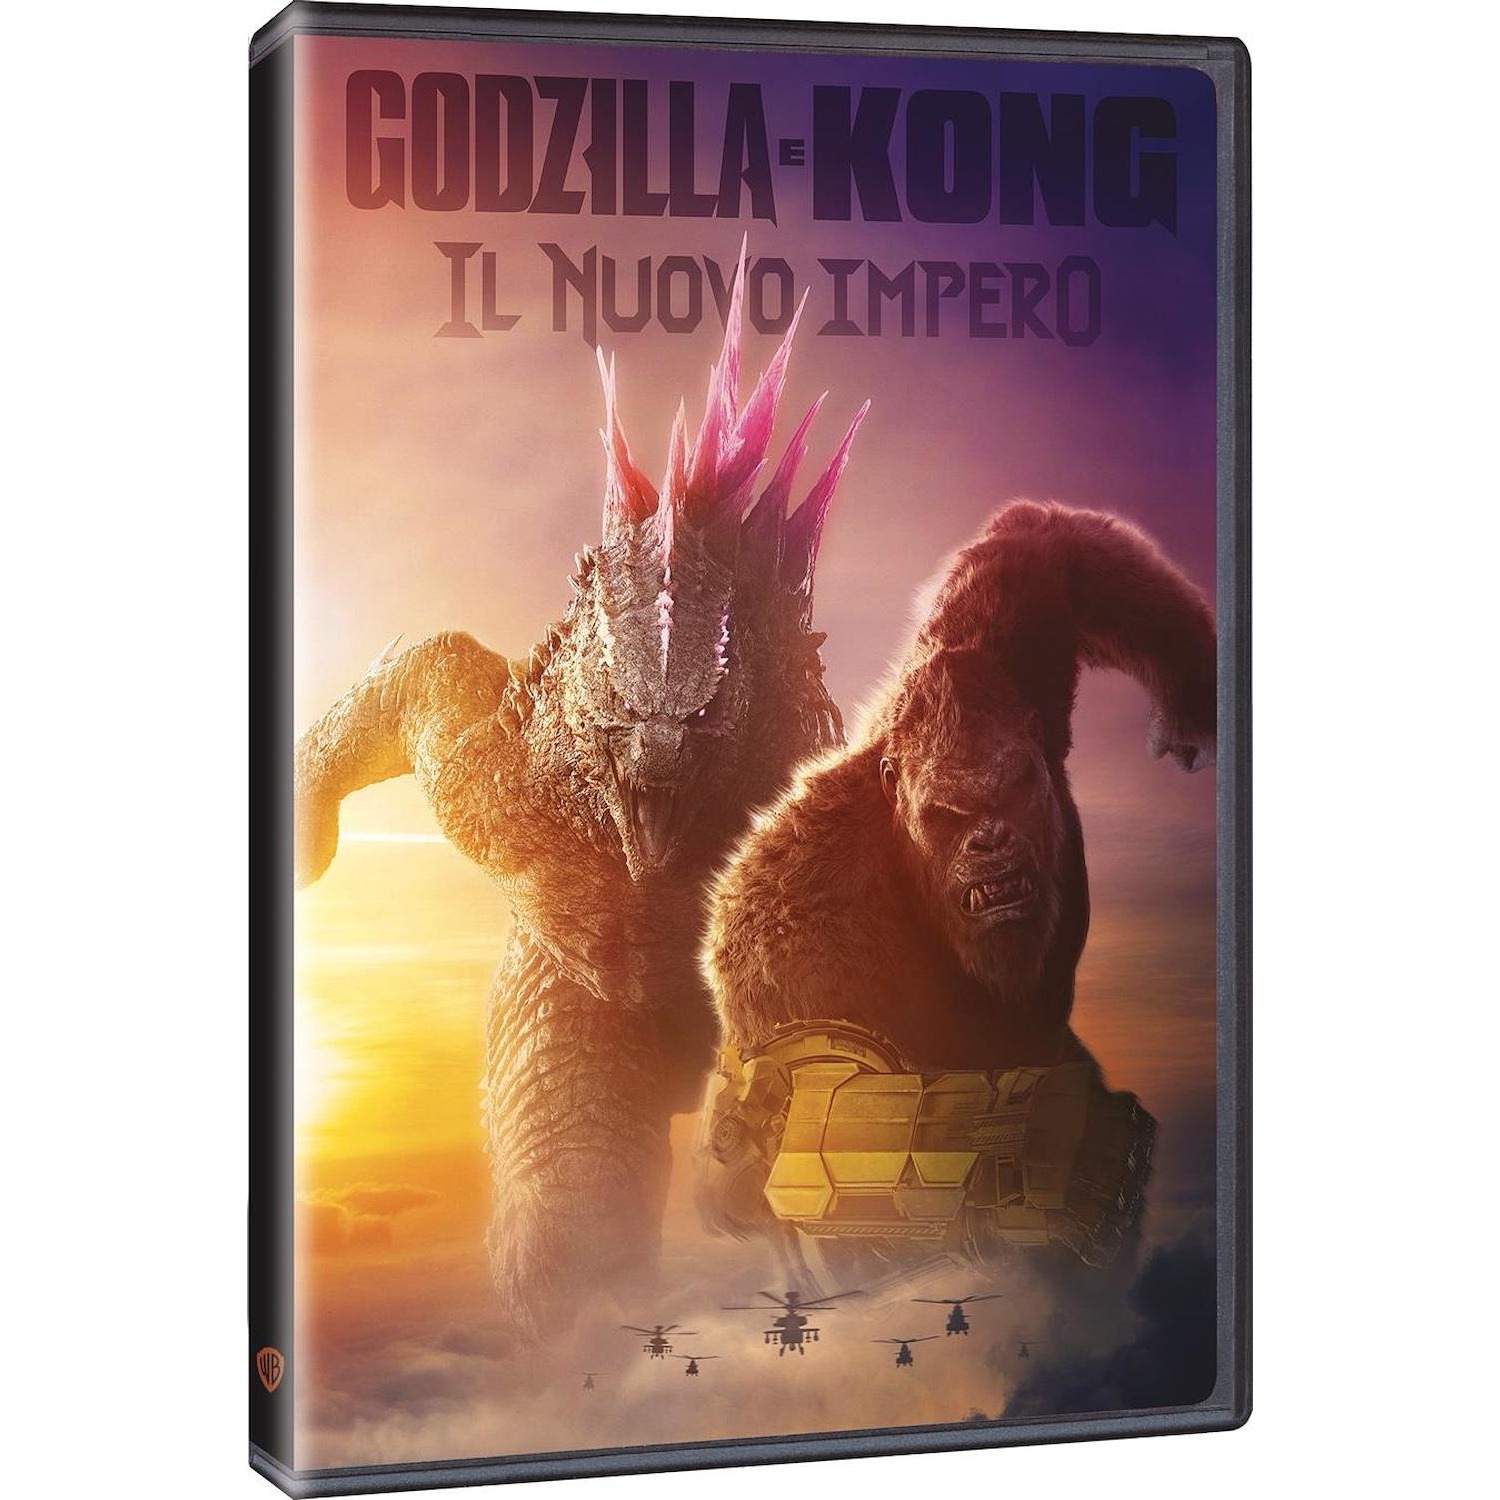 Immagine per DVD Godzilla Vs Kong - Il Nuovo Impero da DIMOStore